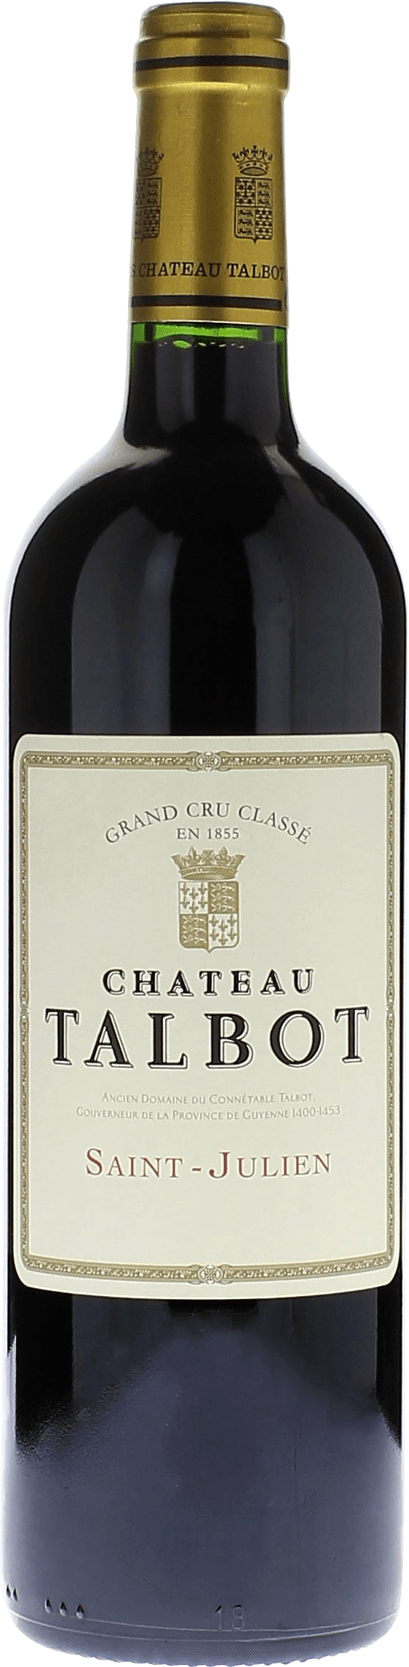 Talbot 2010 4me Grand cru class Saint-Julien, Bordeaux rouge